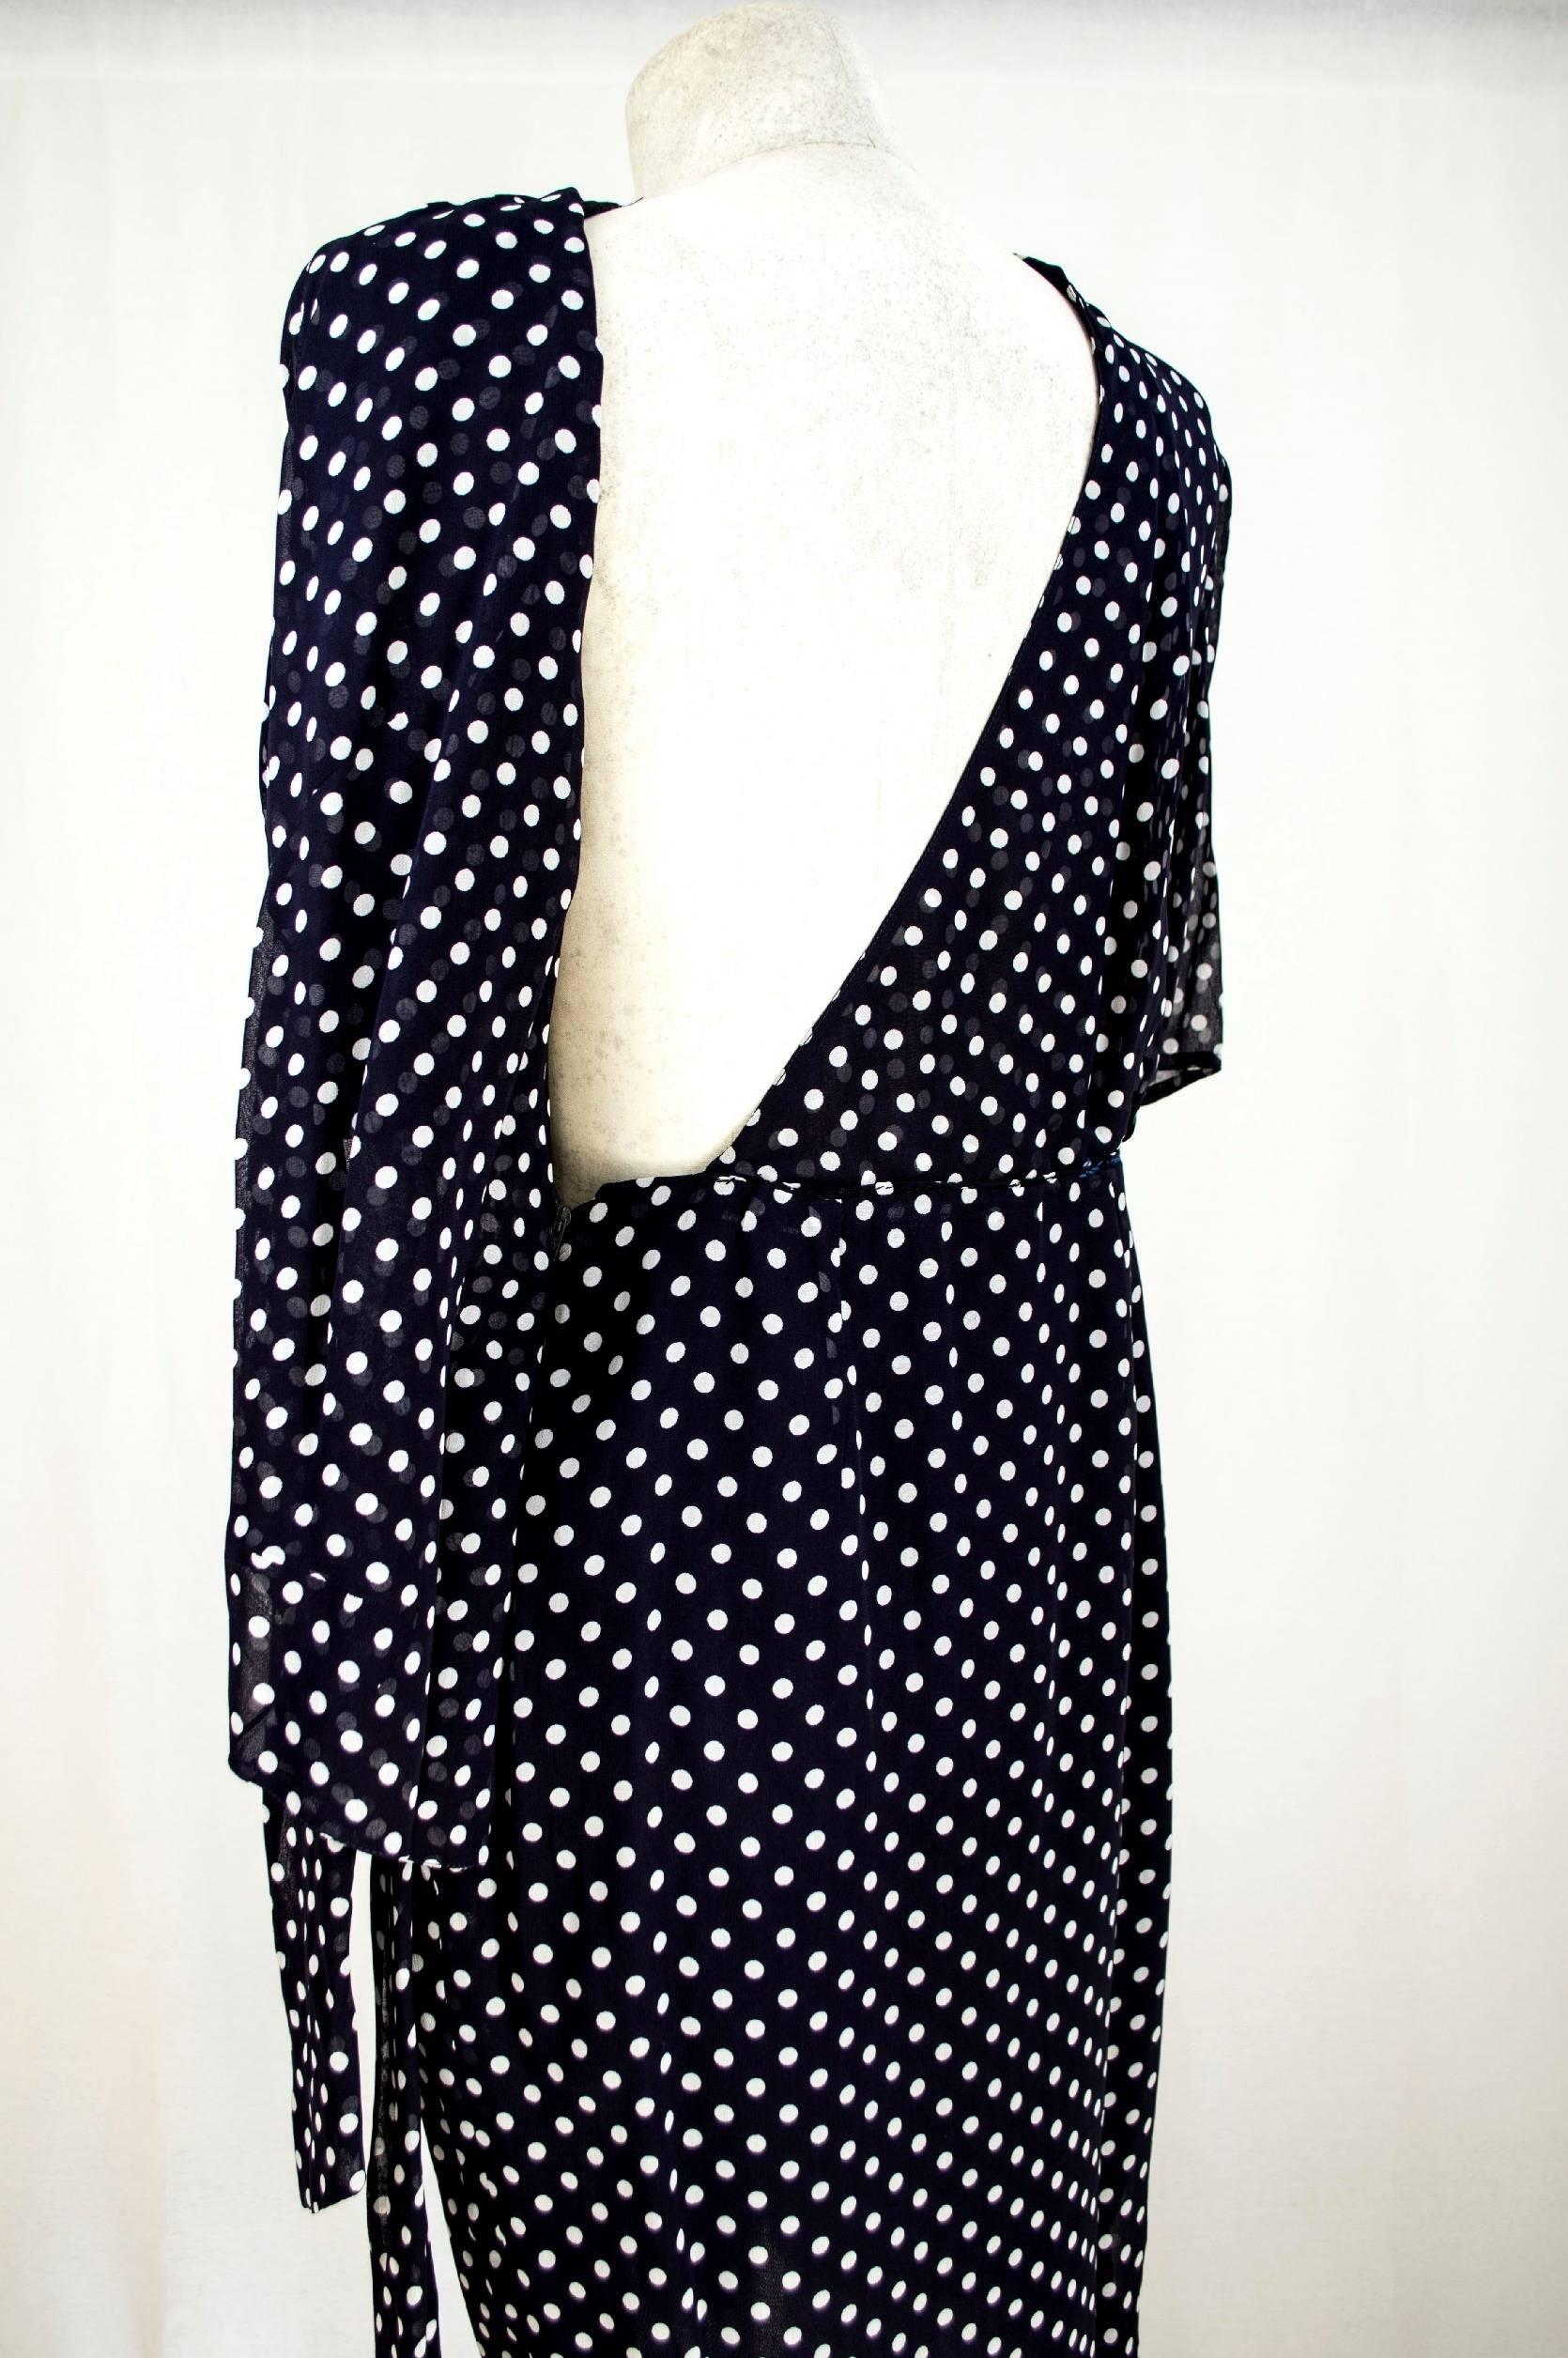 Black Gianfranco Ferrè 1980s vintage polka dot dress pois woman blue silk size 44